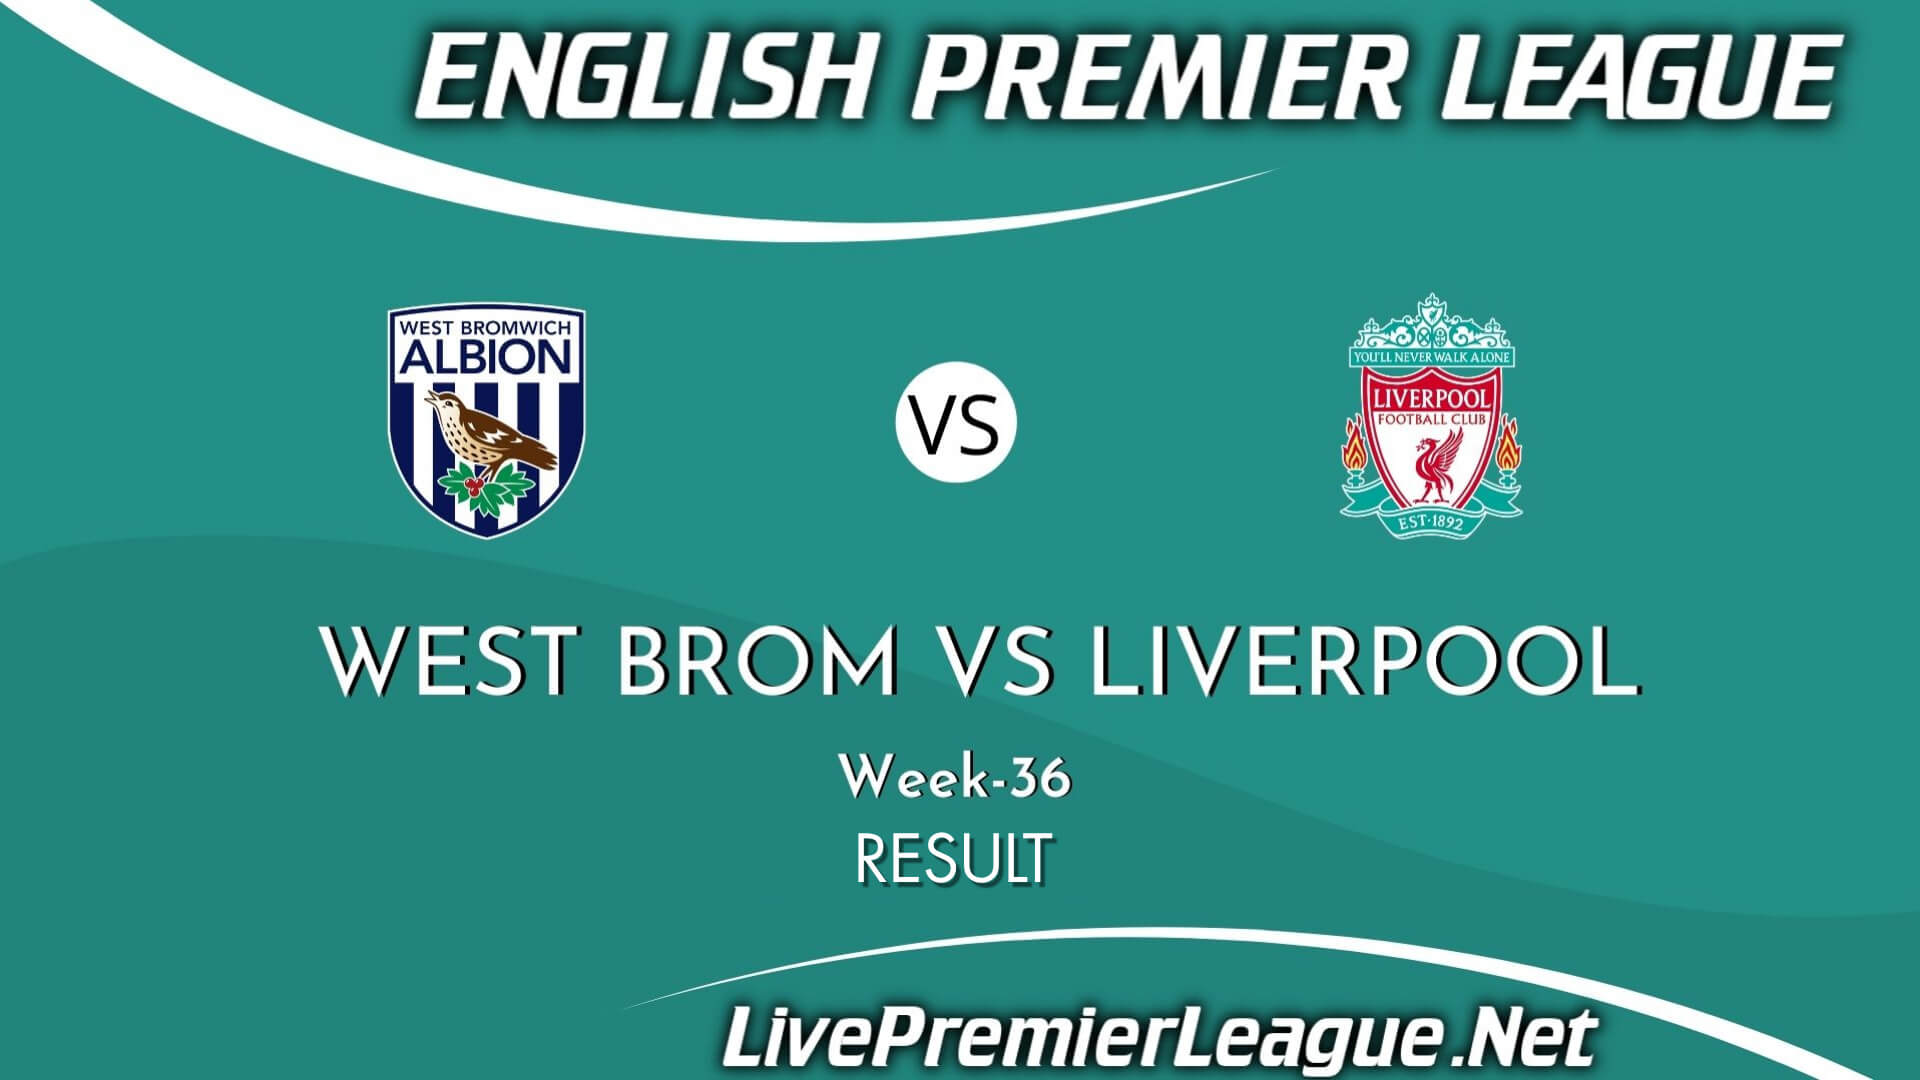 West Brom Vs Liverpool Result 2021 | EPL Week 36